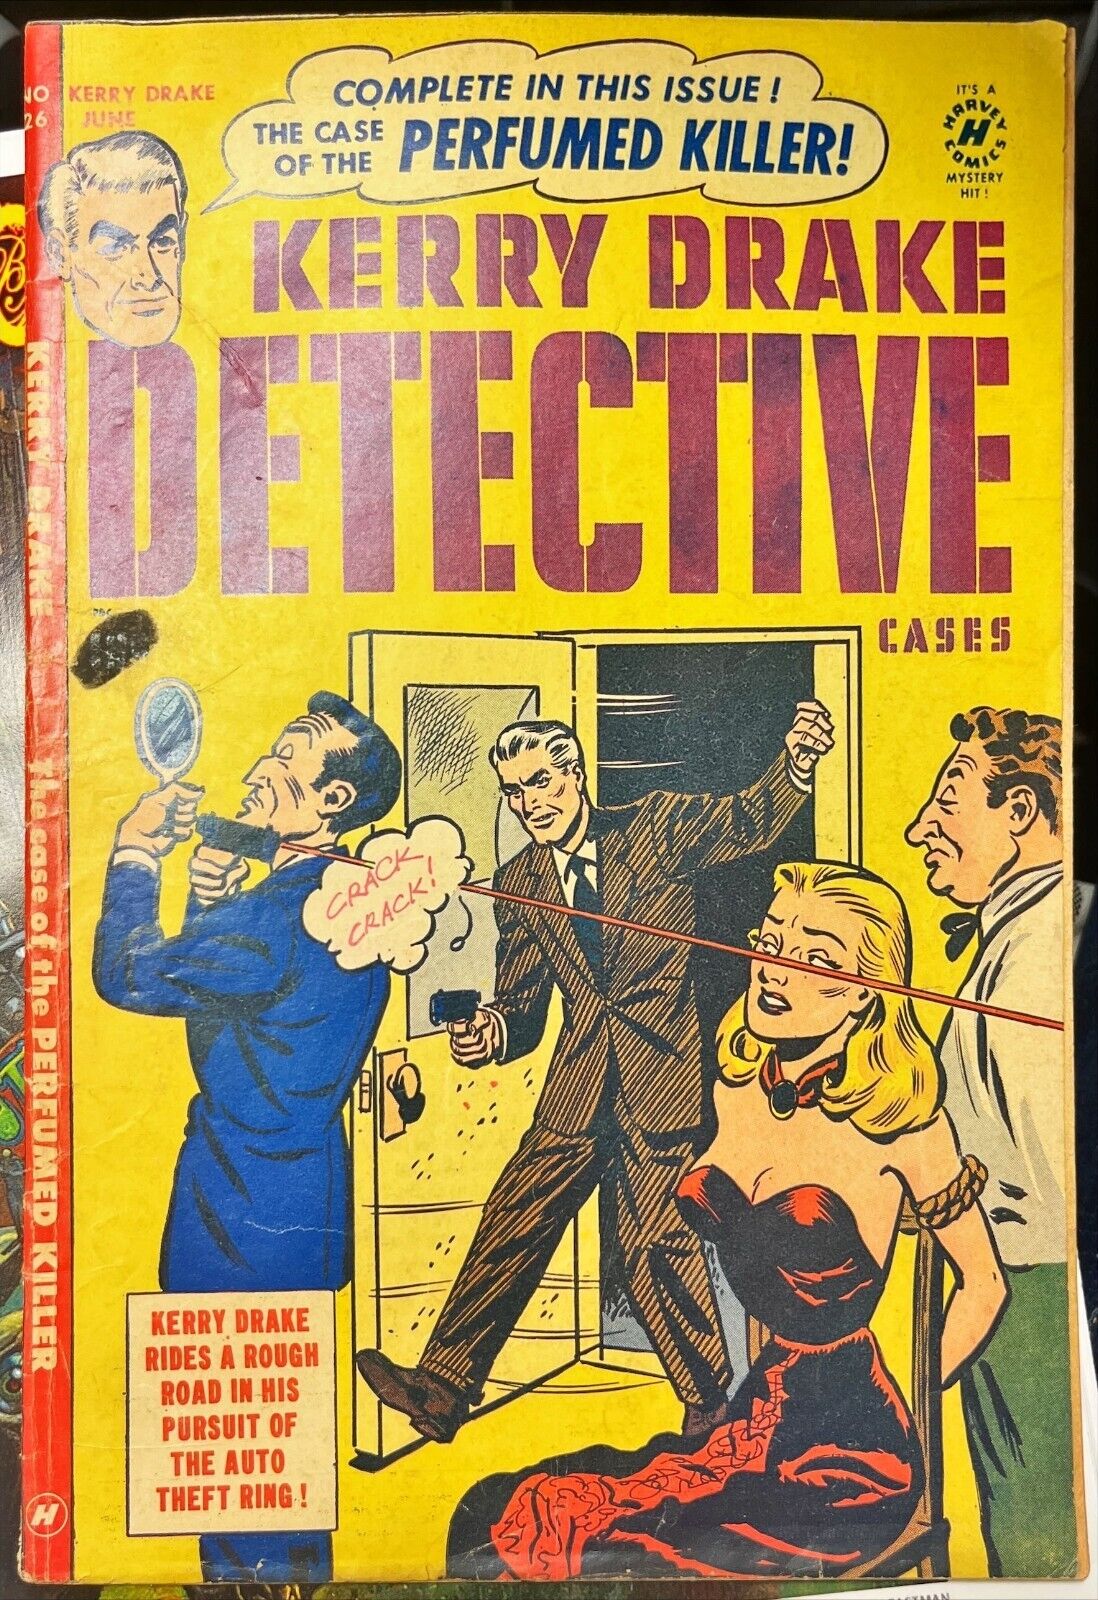 Kerry Drake Detective Cases No. 26 (Harvey Comics, June 1951)